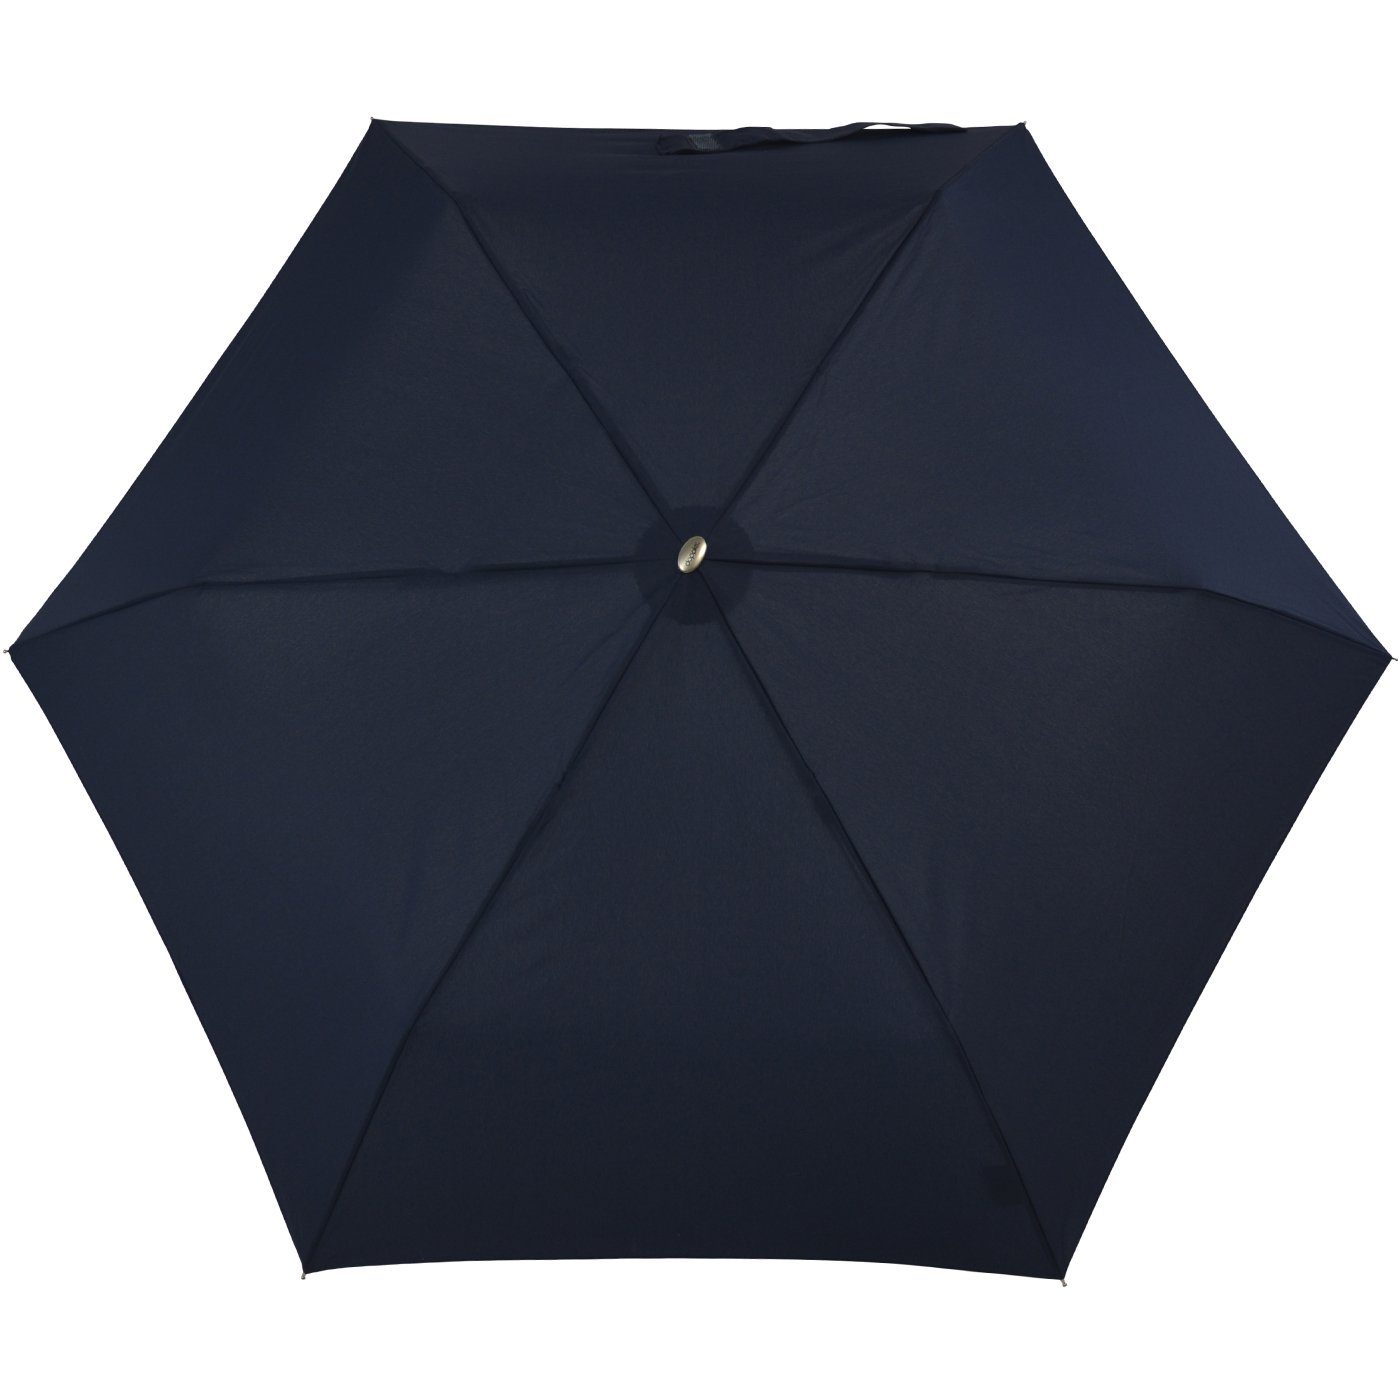 doppler® Langregenschirm ein leichter und flacher Schirm für jede Tasche,  dieser treue Begleiter findet überall Platz